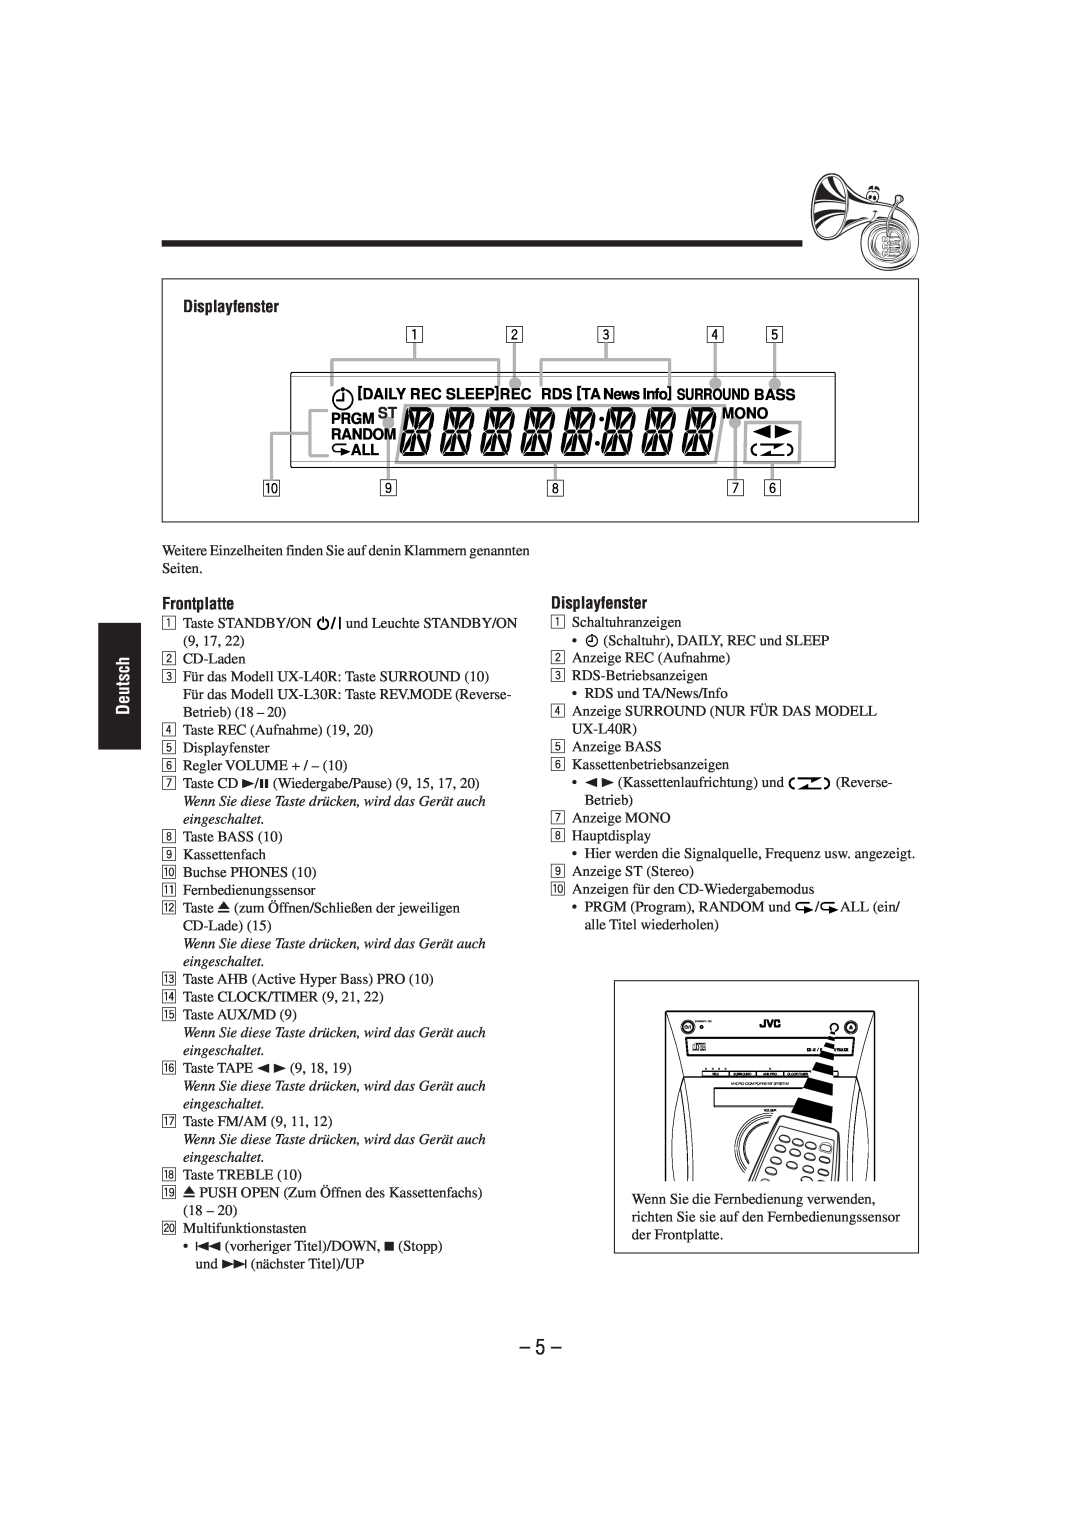 JVC CA-UXL40R, UX-L40R, UX-L30R, SP-UXL30, SP-UXL40, CA-UXL30R manual Displayfenster, 5, Deutsch, Frontplatte 